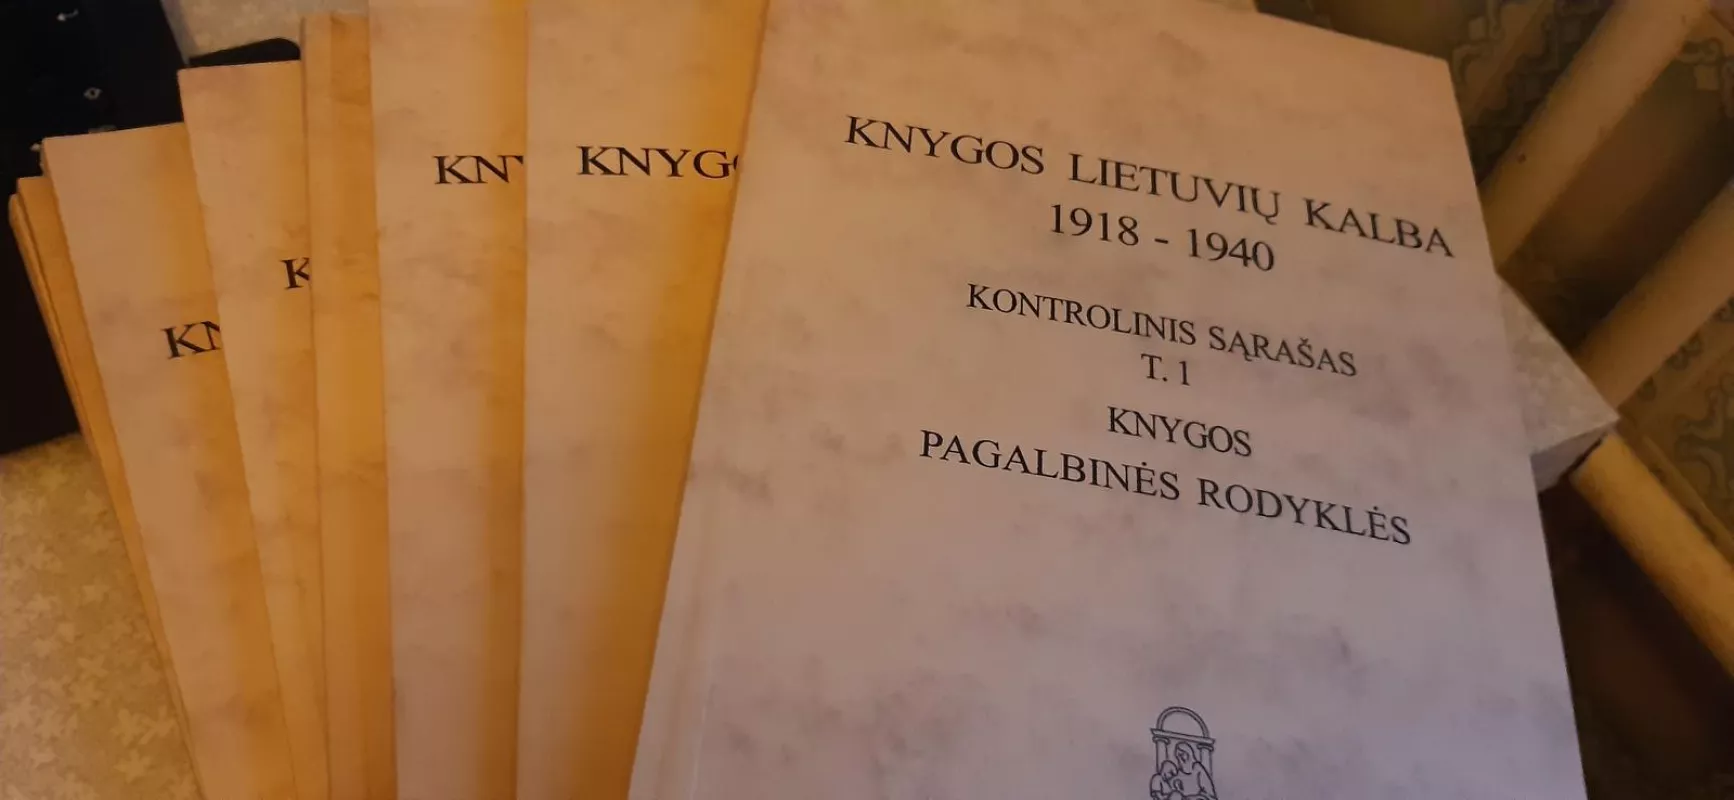 Knygos lietuvių kalba, 1918-1940 (9 knygos) - R. Bagušytė, ir kiti , knyga